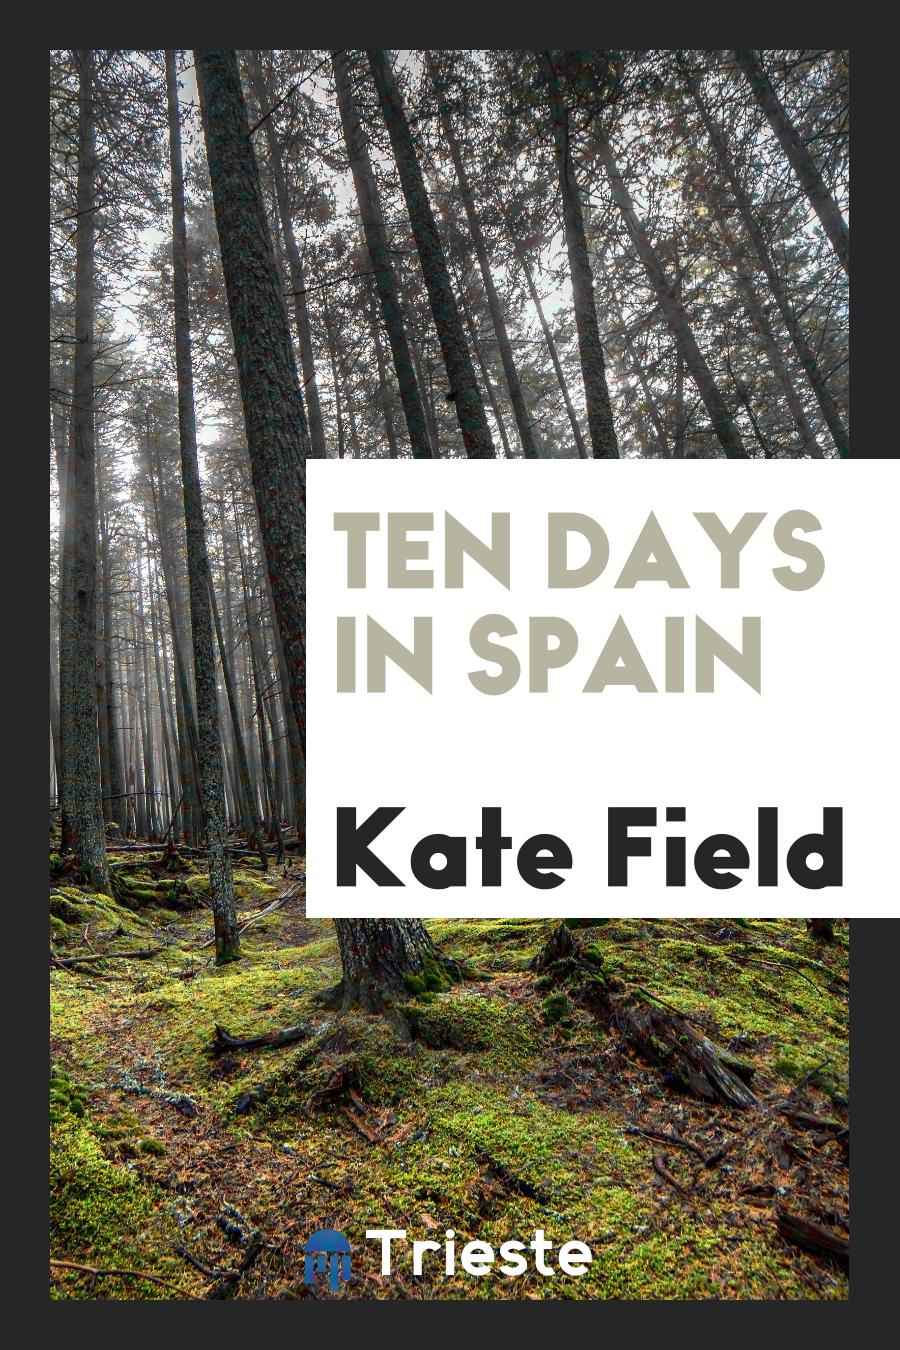 Kate Field - Ten days in Spain